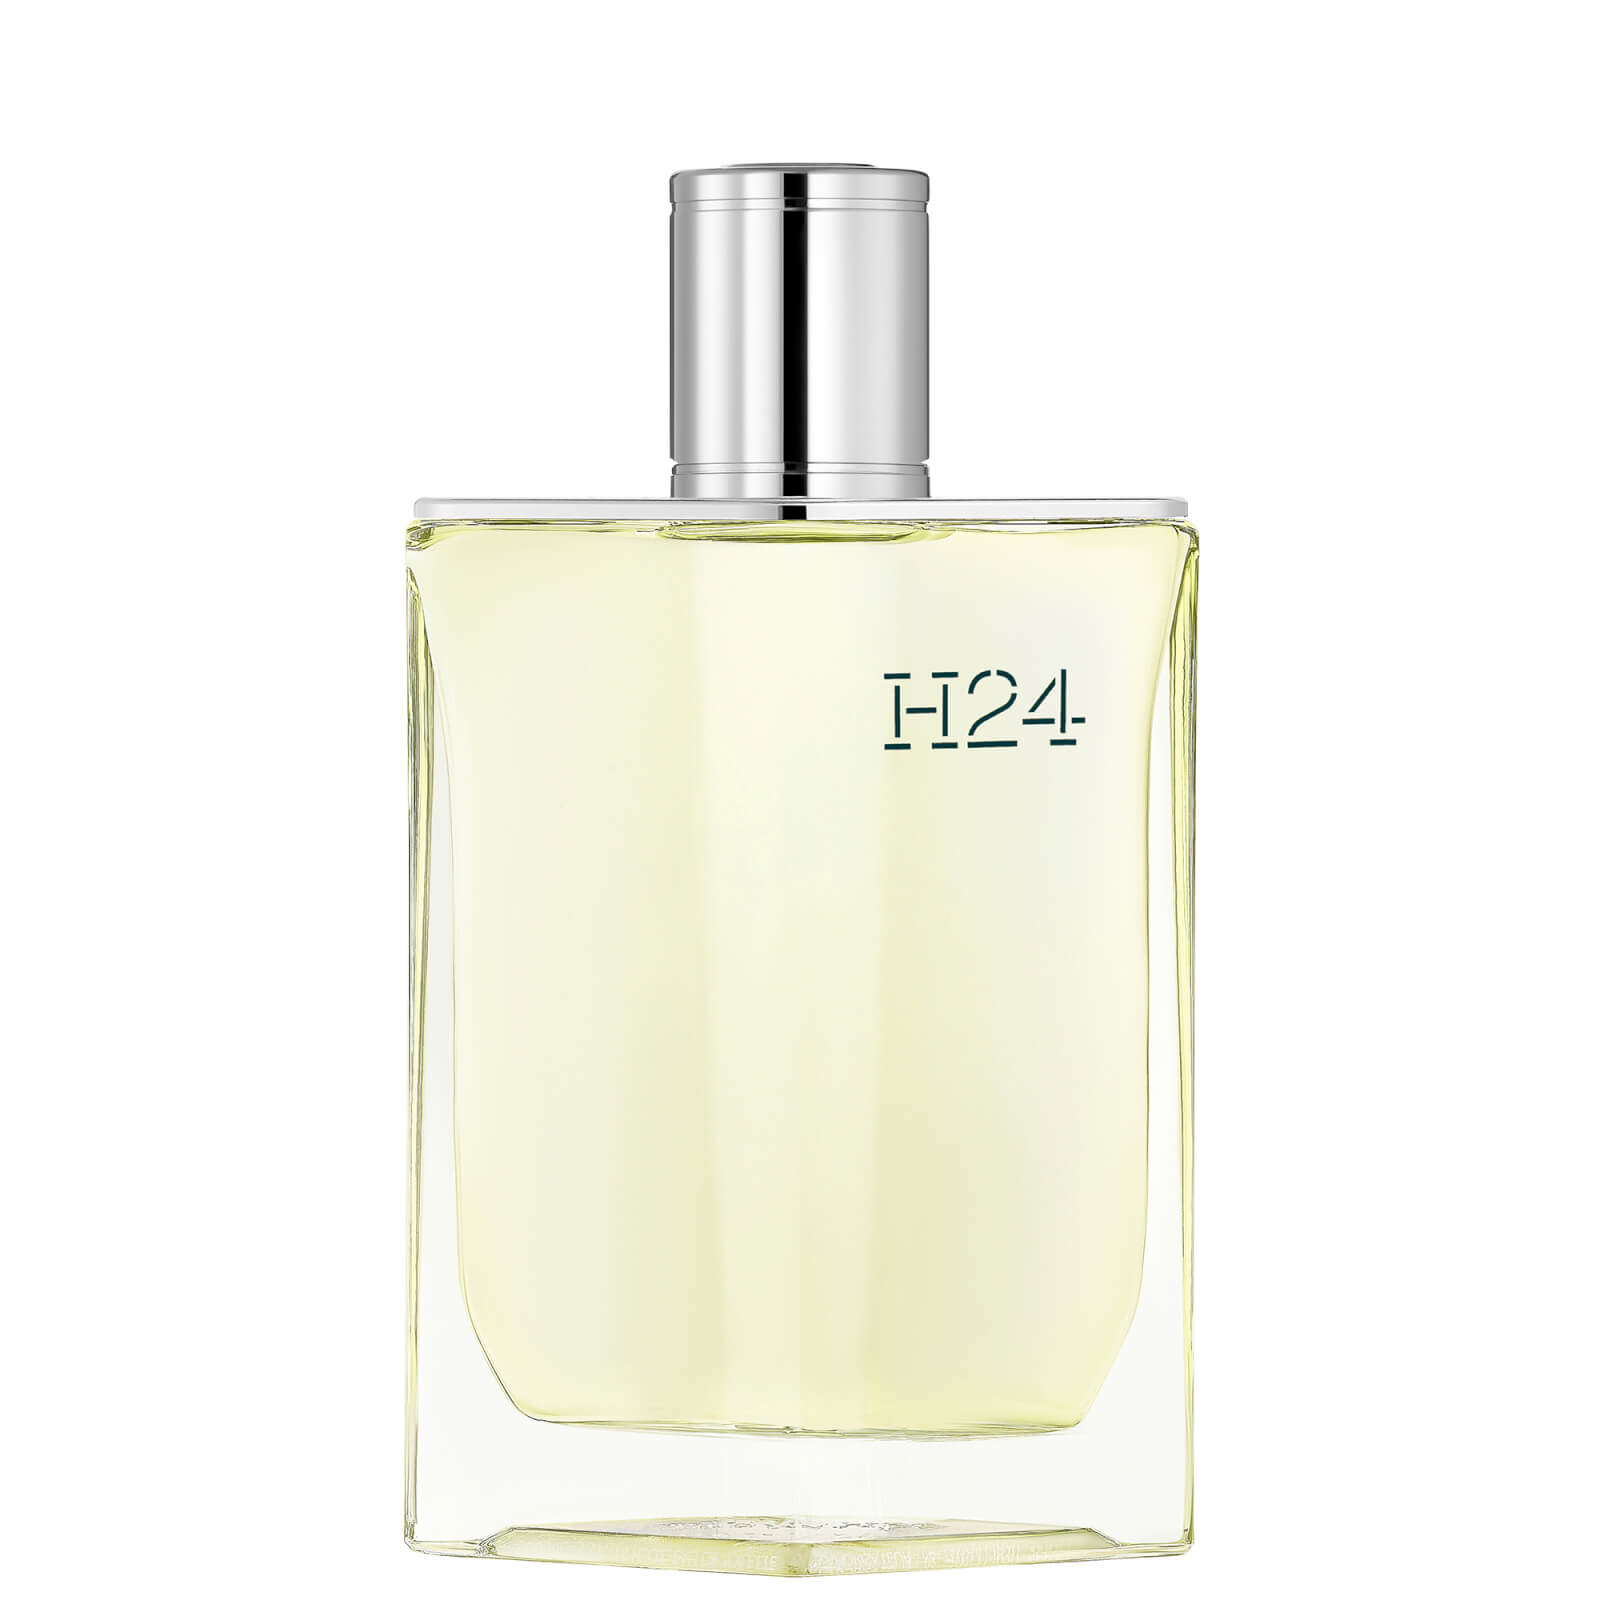 Photos - Women's Fragrance Hermes Hermès H24 Eau de Toilette 100ml 101561V0 